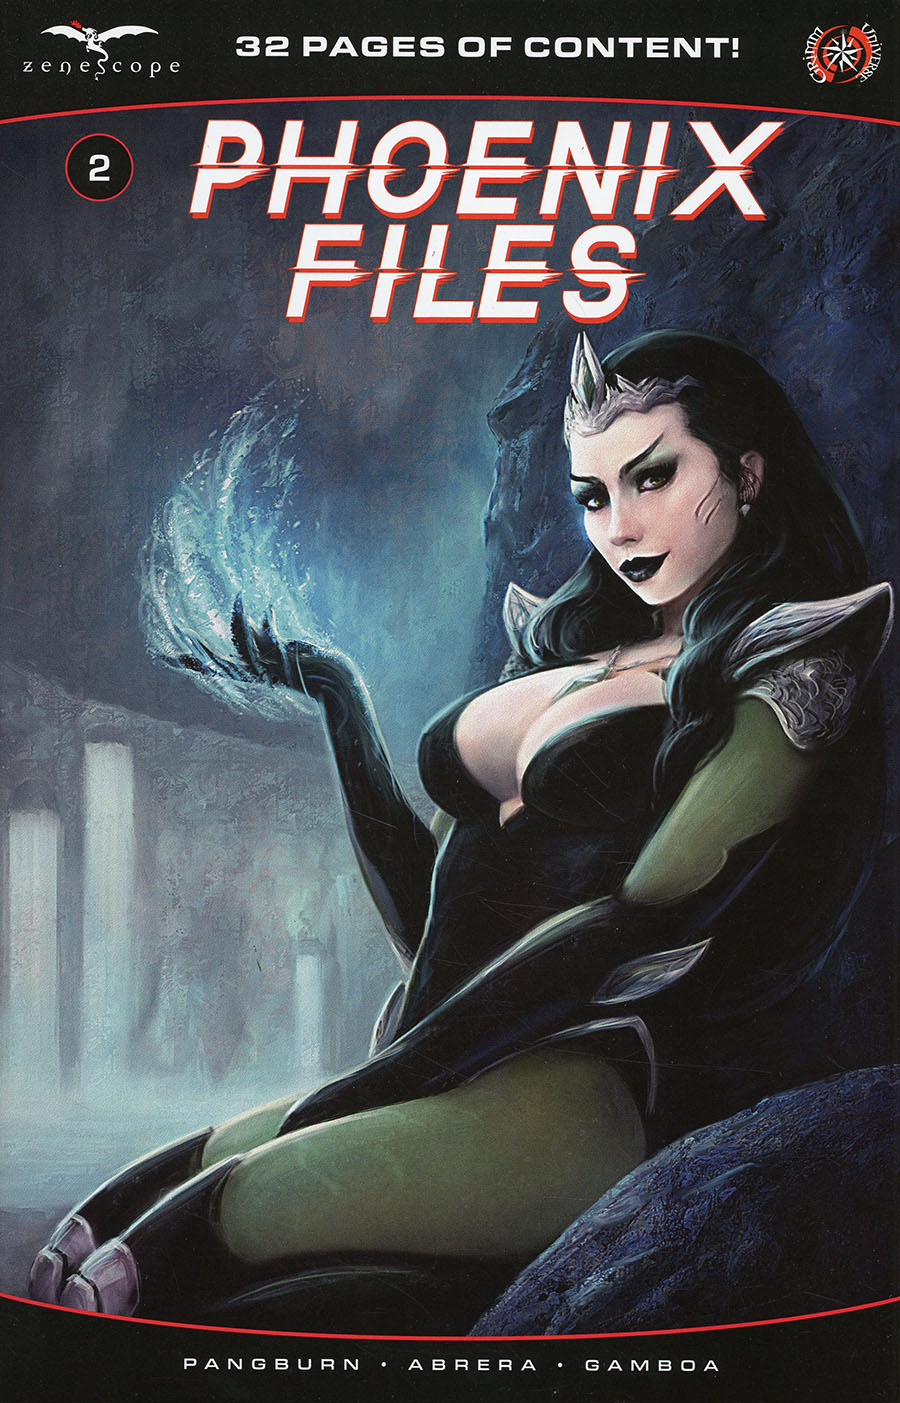 Phoenix Files #2 Cover C Pierluigi Abbondanza